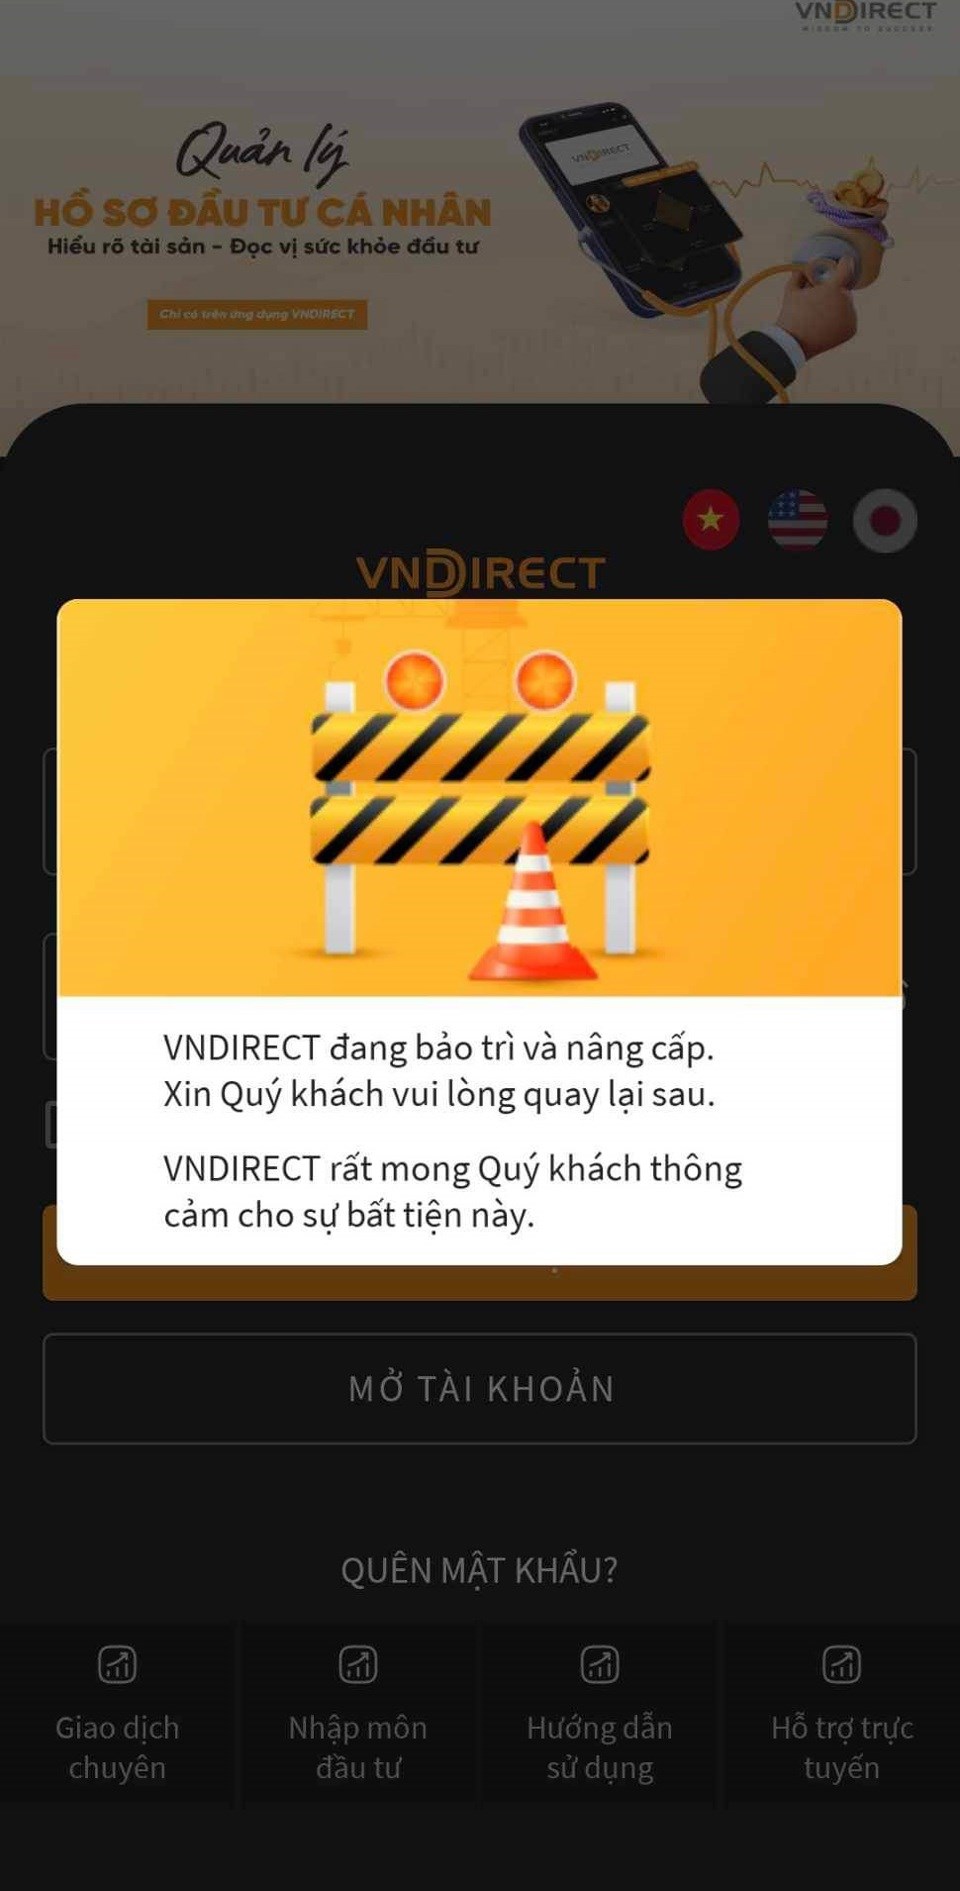 VNDirect bị tấn công: Tạm thời ngắt kết nối giao dịch tới HNX  - ảnh 1